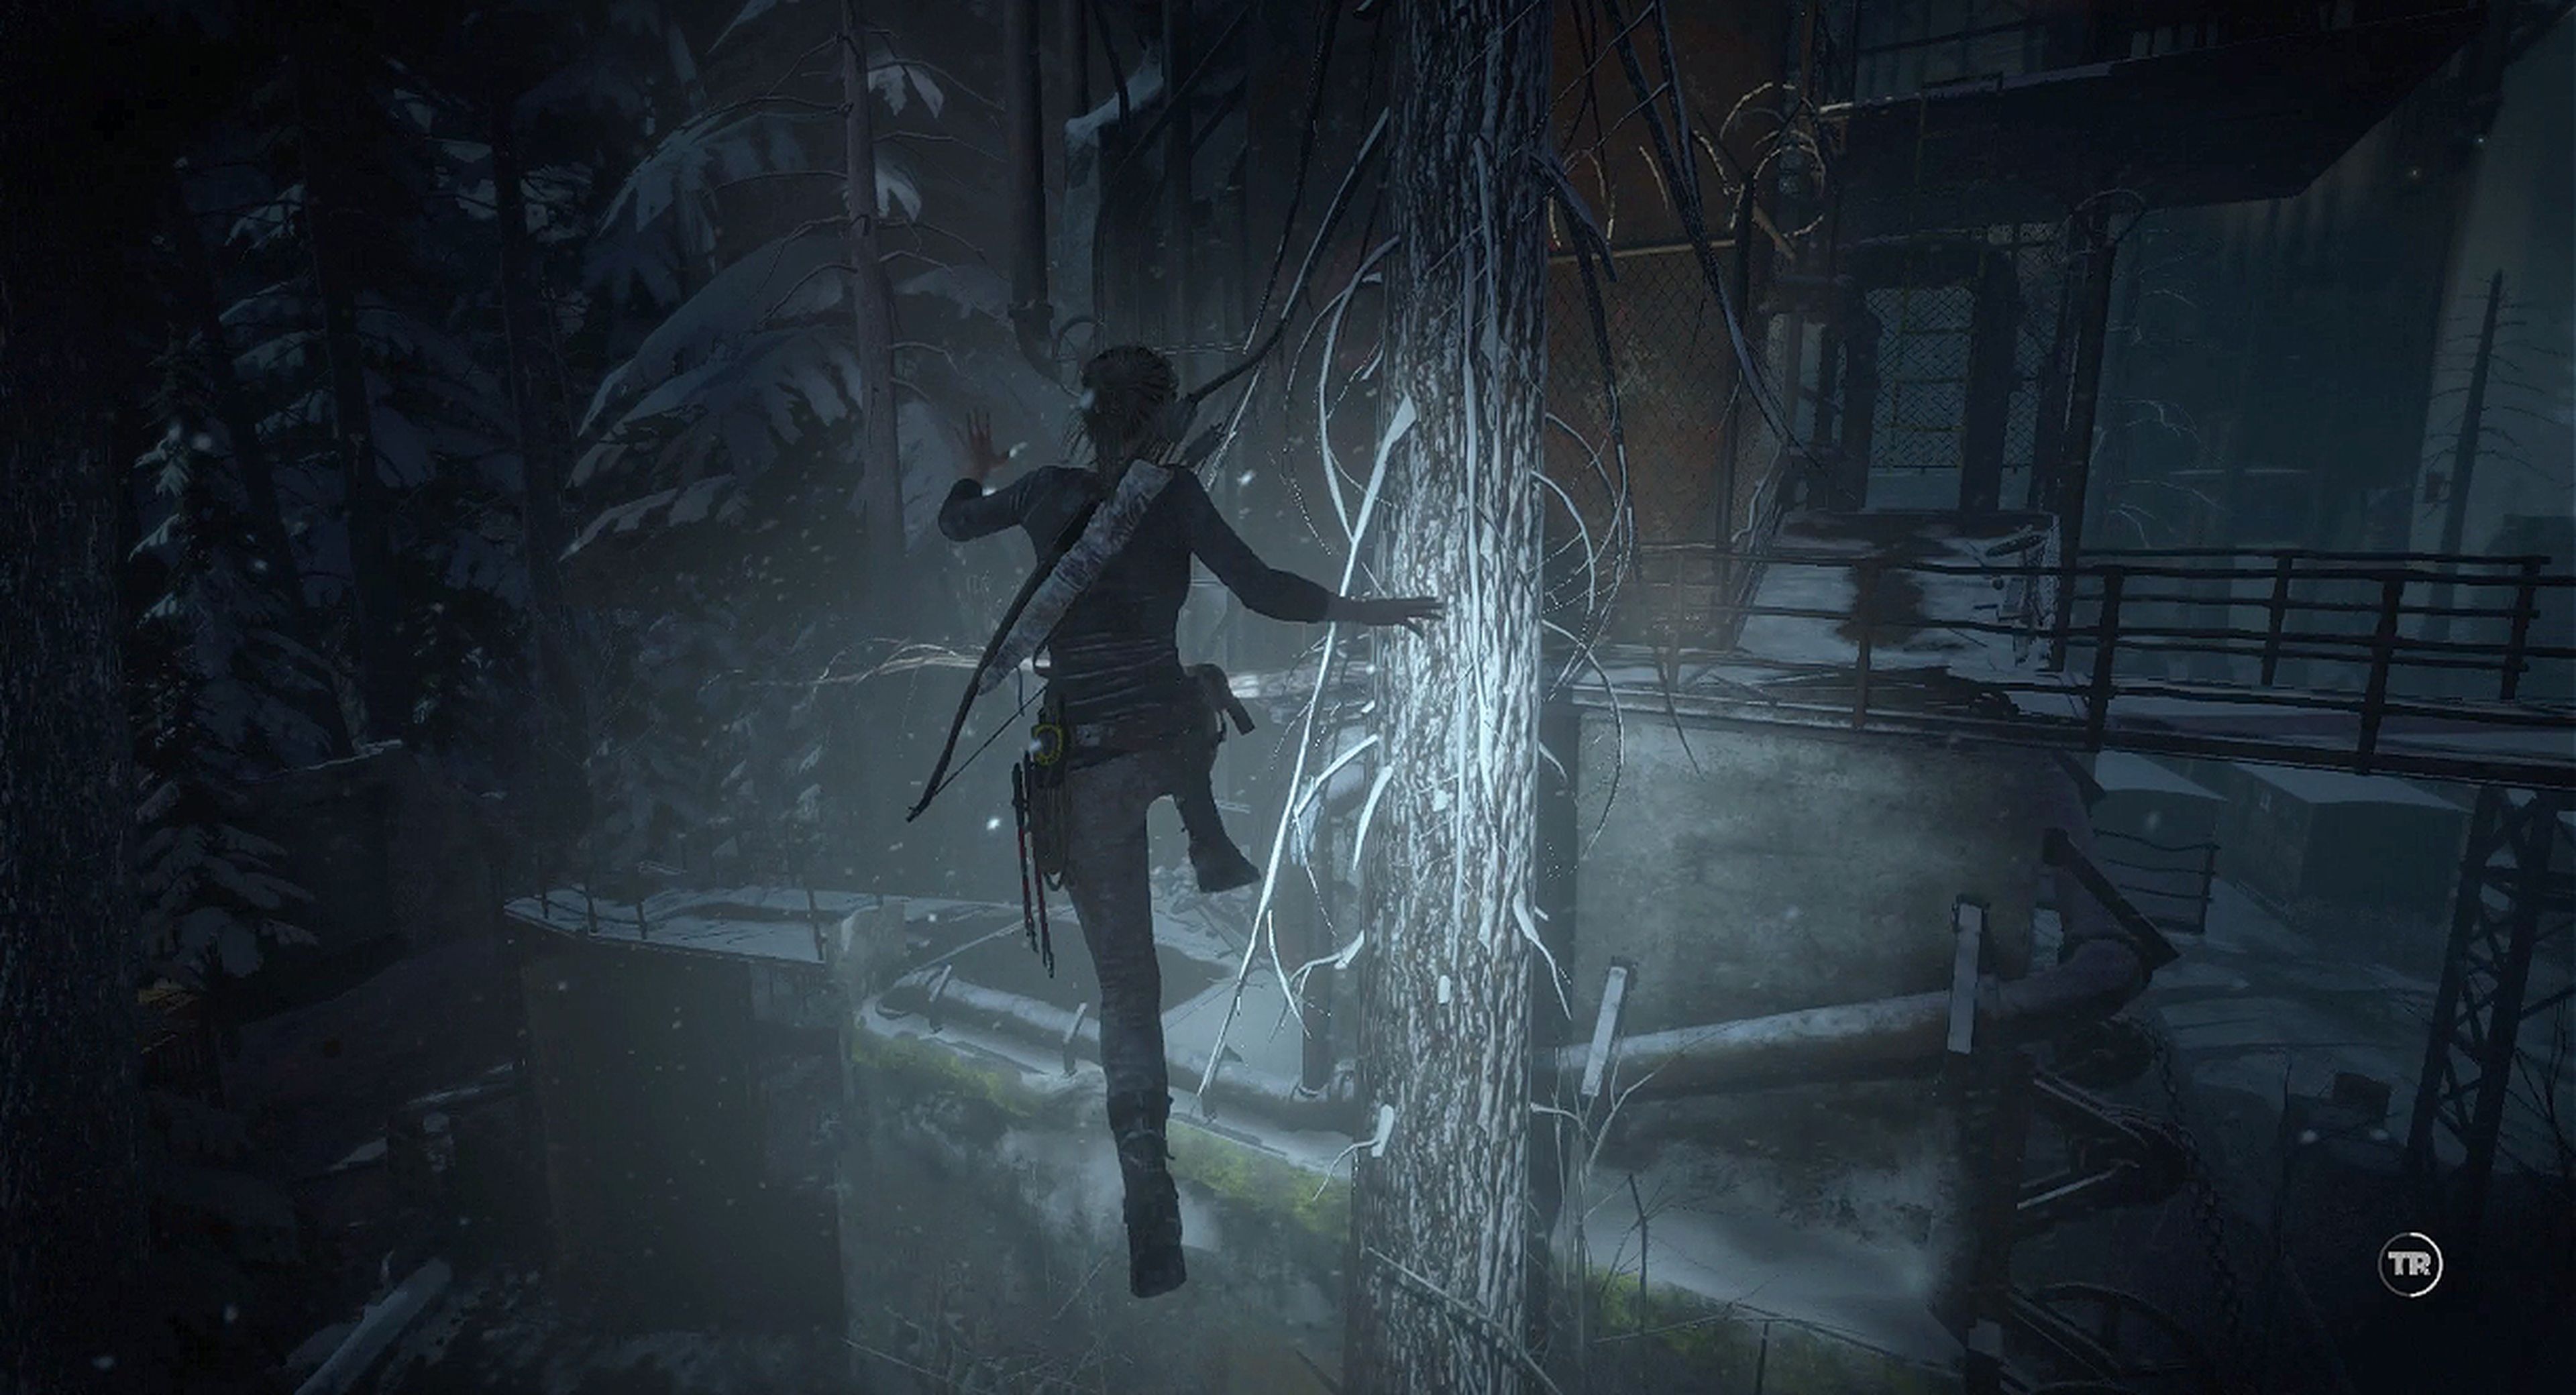 Análisis de Rise of the Tomb Raider - El despertar de la fría oscuridad